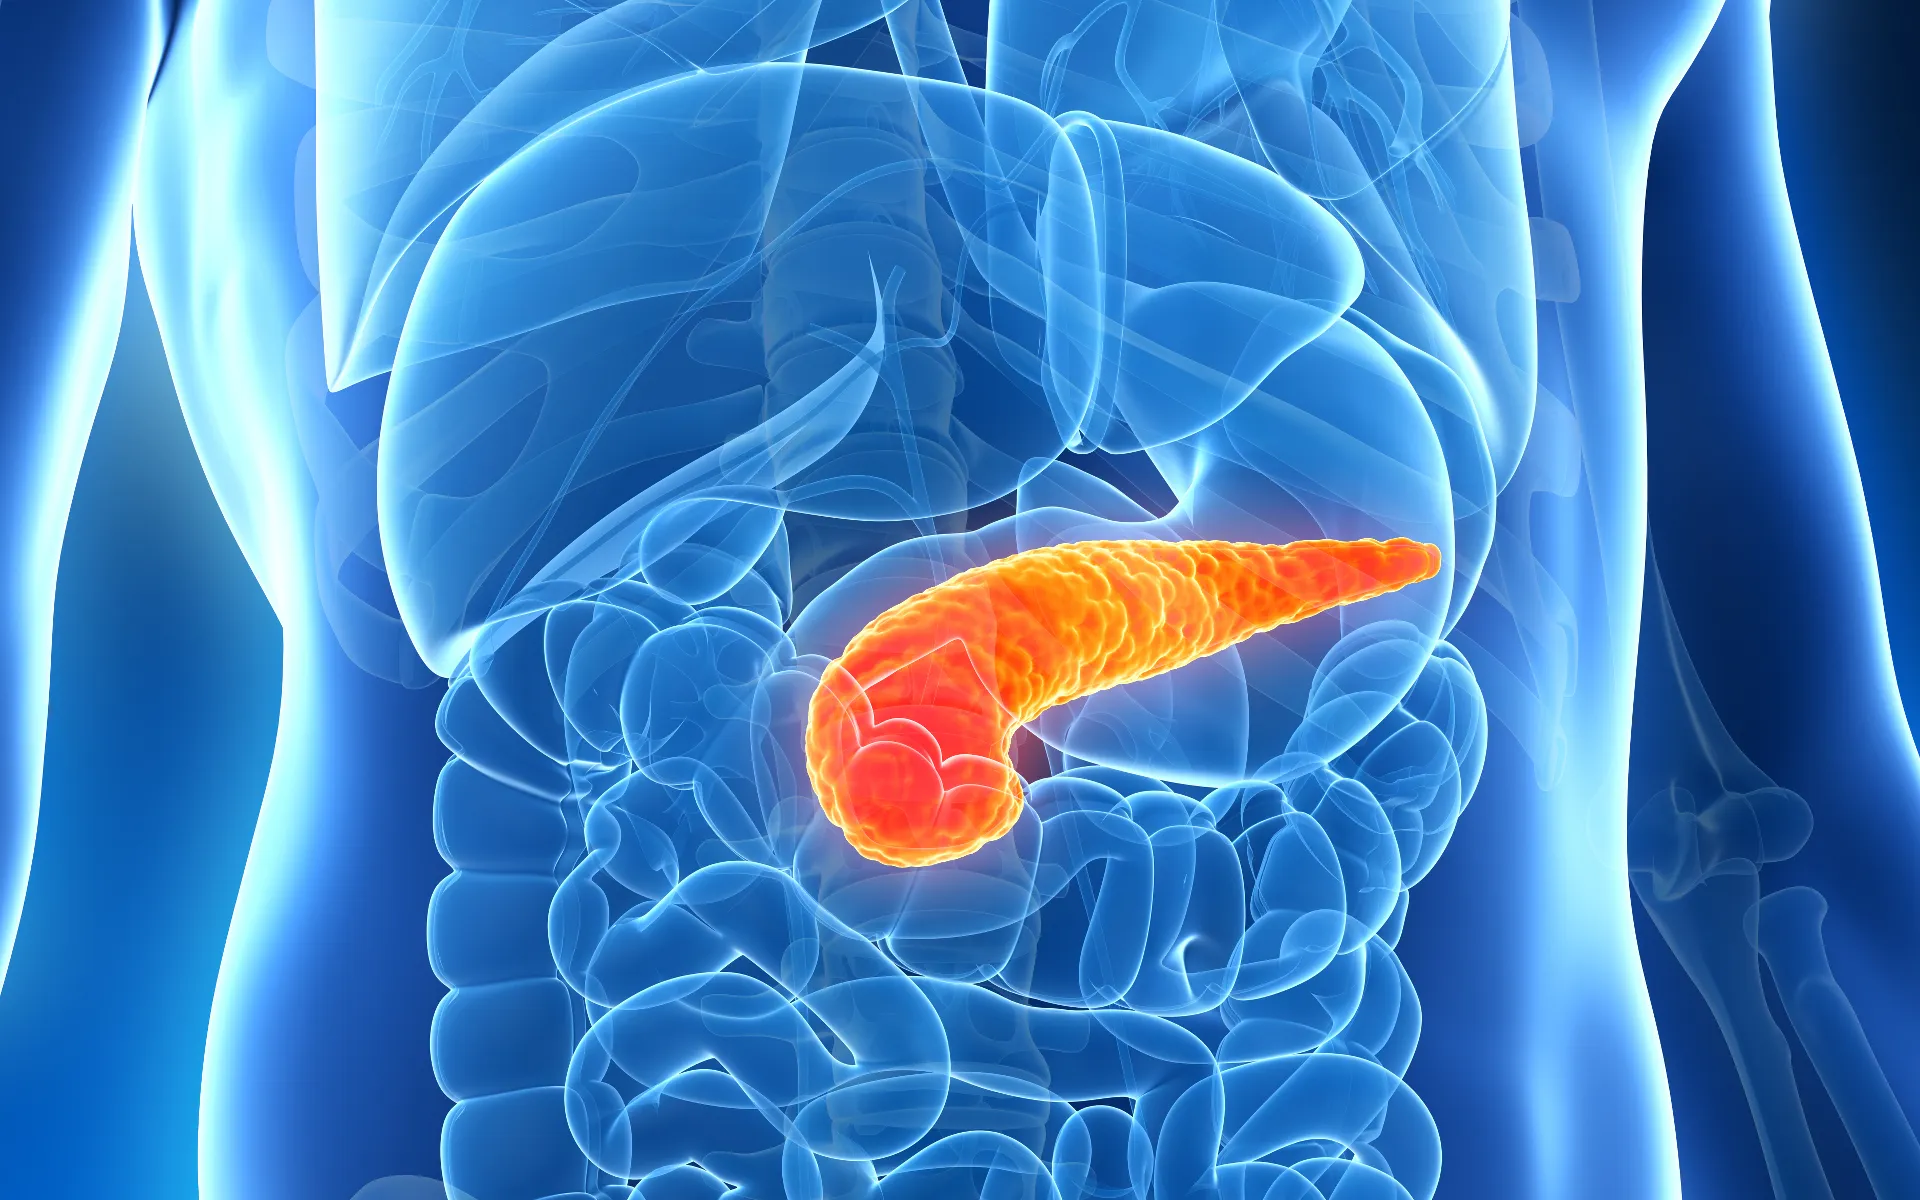 10 Warning Signs of Pancreatitis